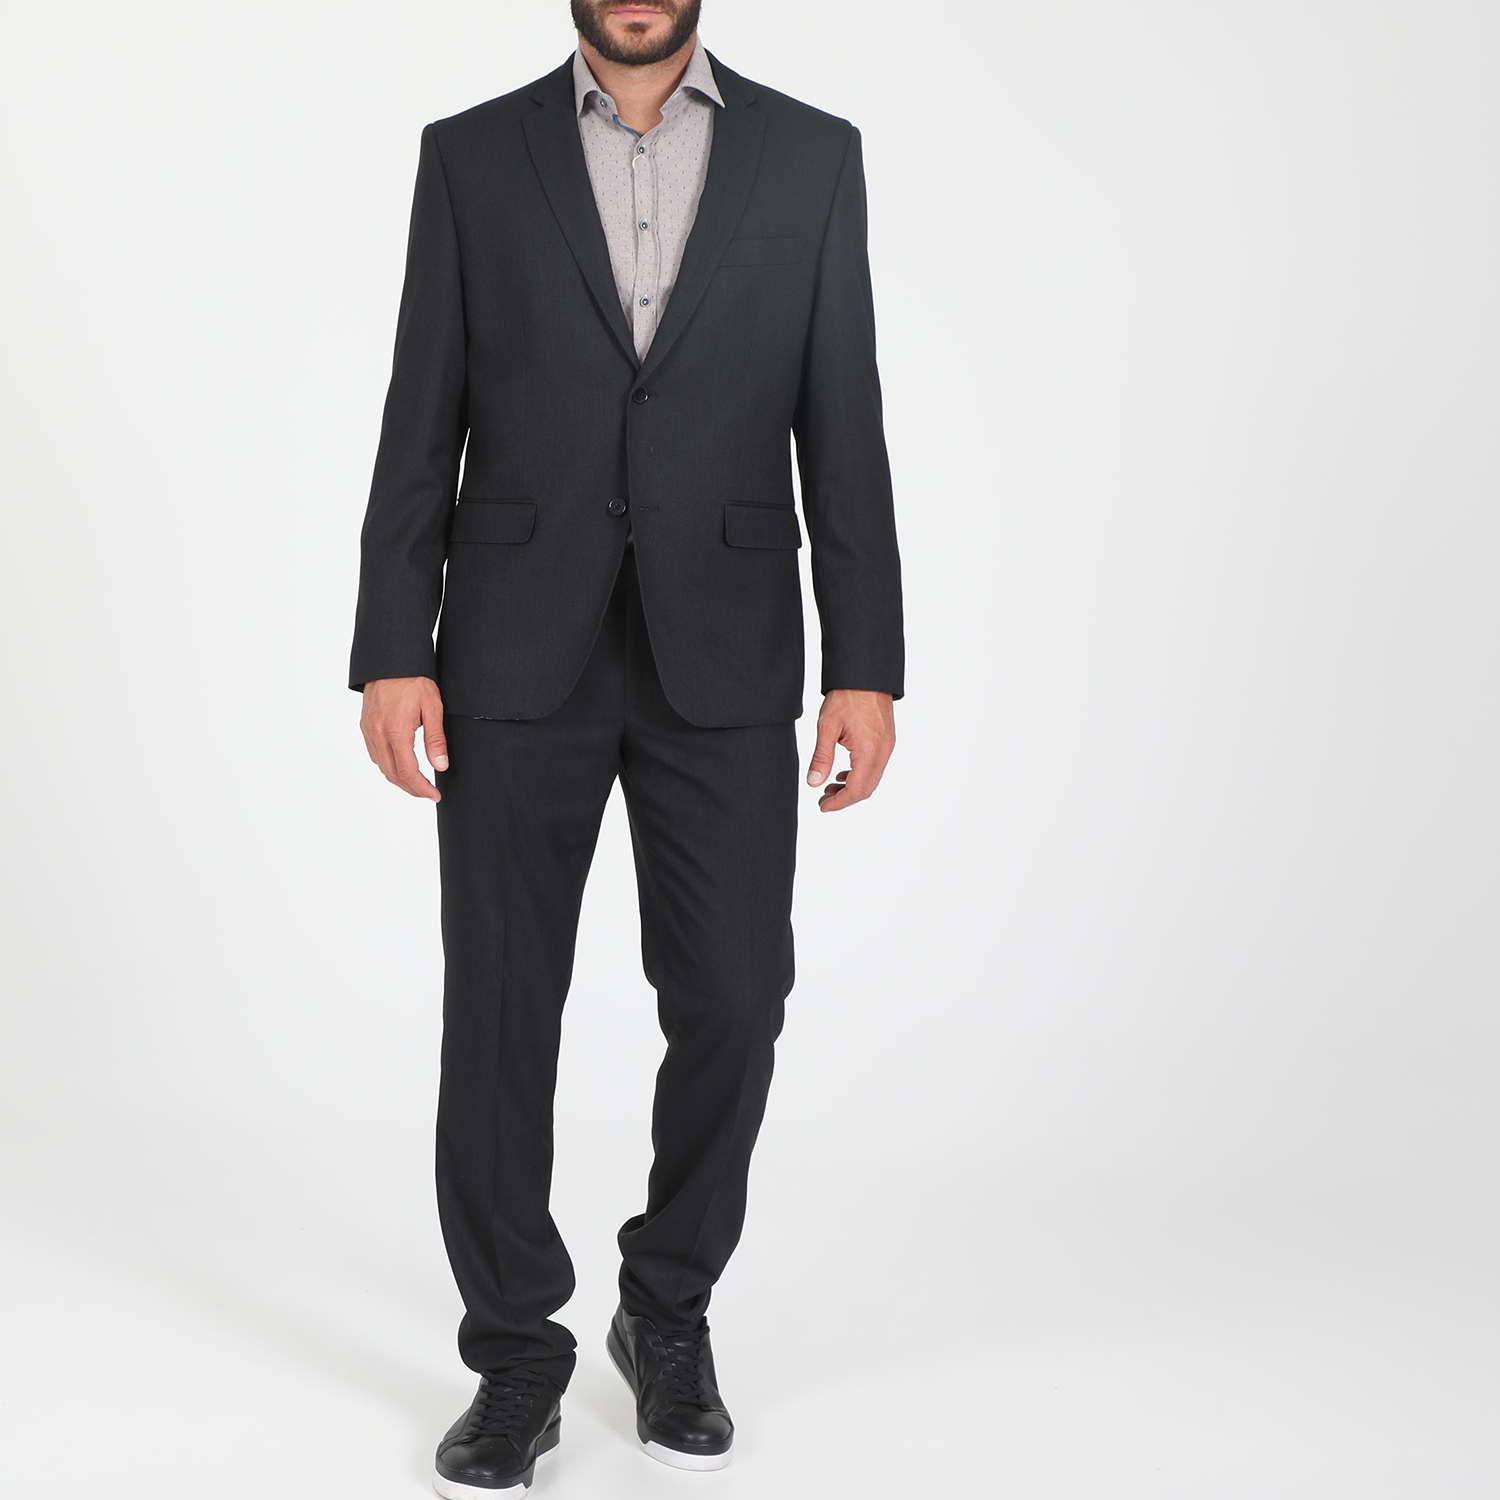 Ανδρικά/Ρούχα/Πανωφόρια/Σακάκια MARTIN & CO - Ανδρικό κοστούμι MARTIN & CO REGULAR SUIT γκρι